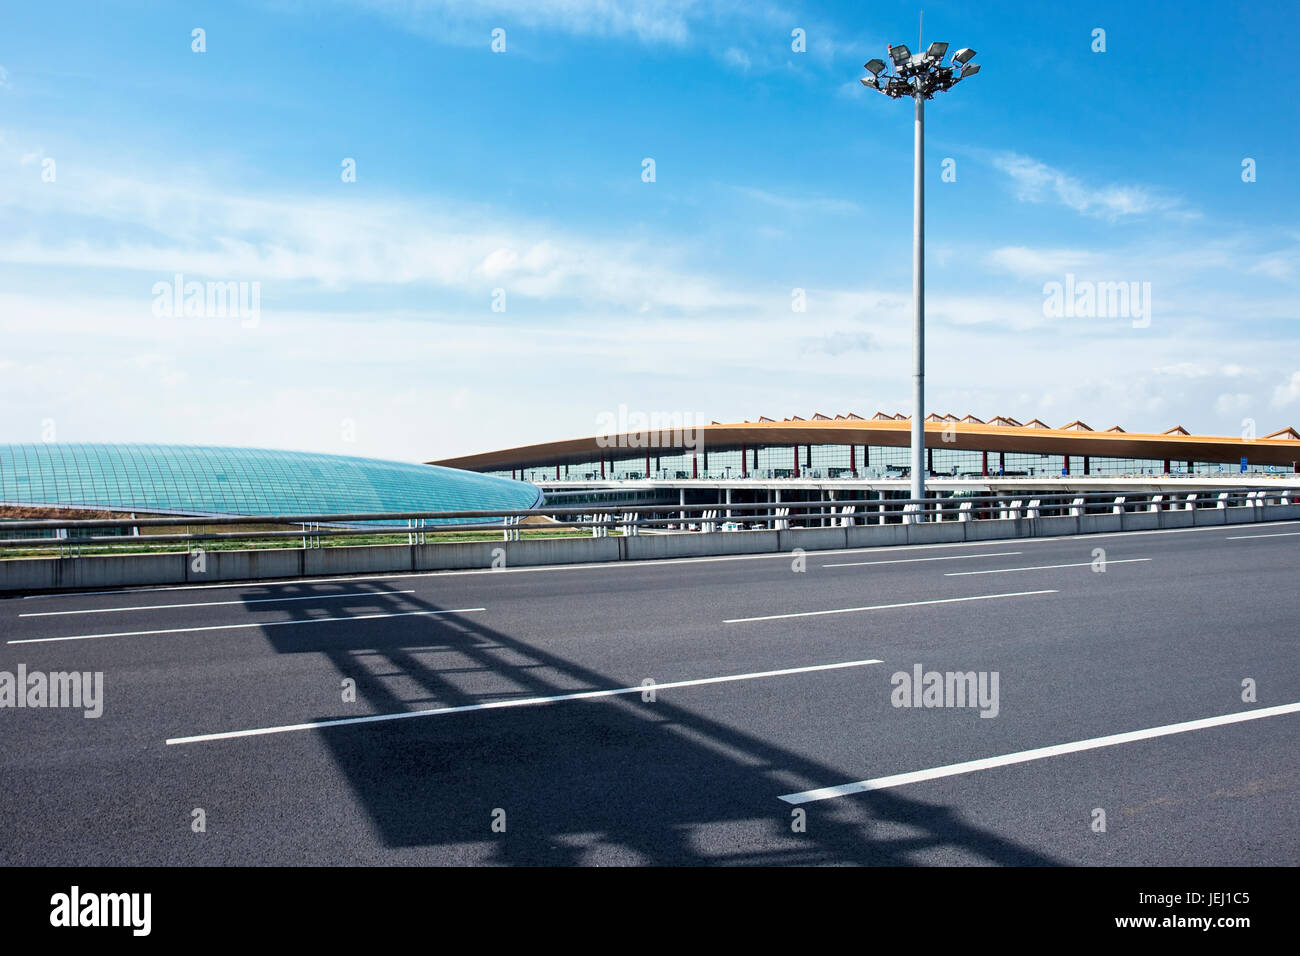 PECHINO-OTT. 13, 2011. Terminal 3 dell'aeroporto internazionale di Pechino Capital in una giornata di sole con un cielo blu e le nuvole drammatiche. Foto Stock